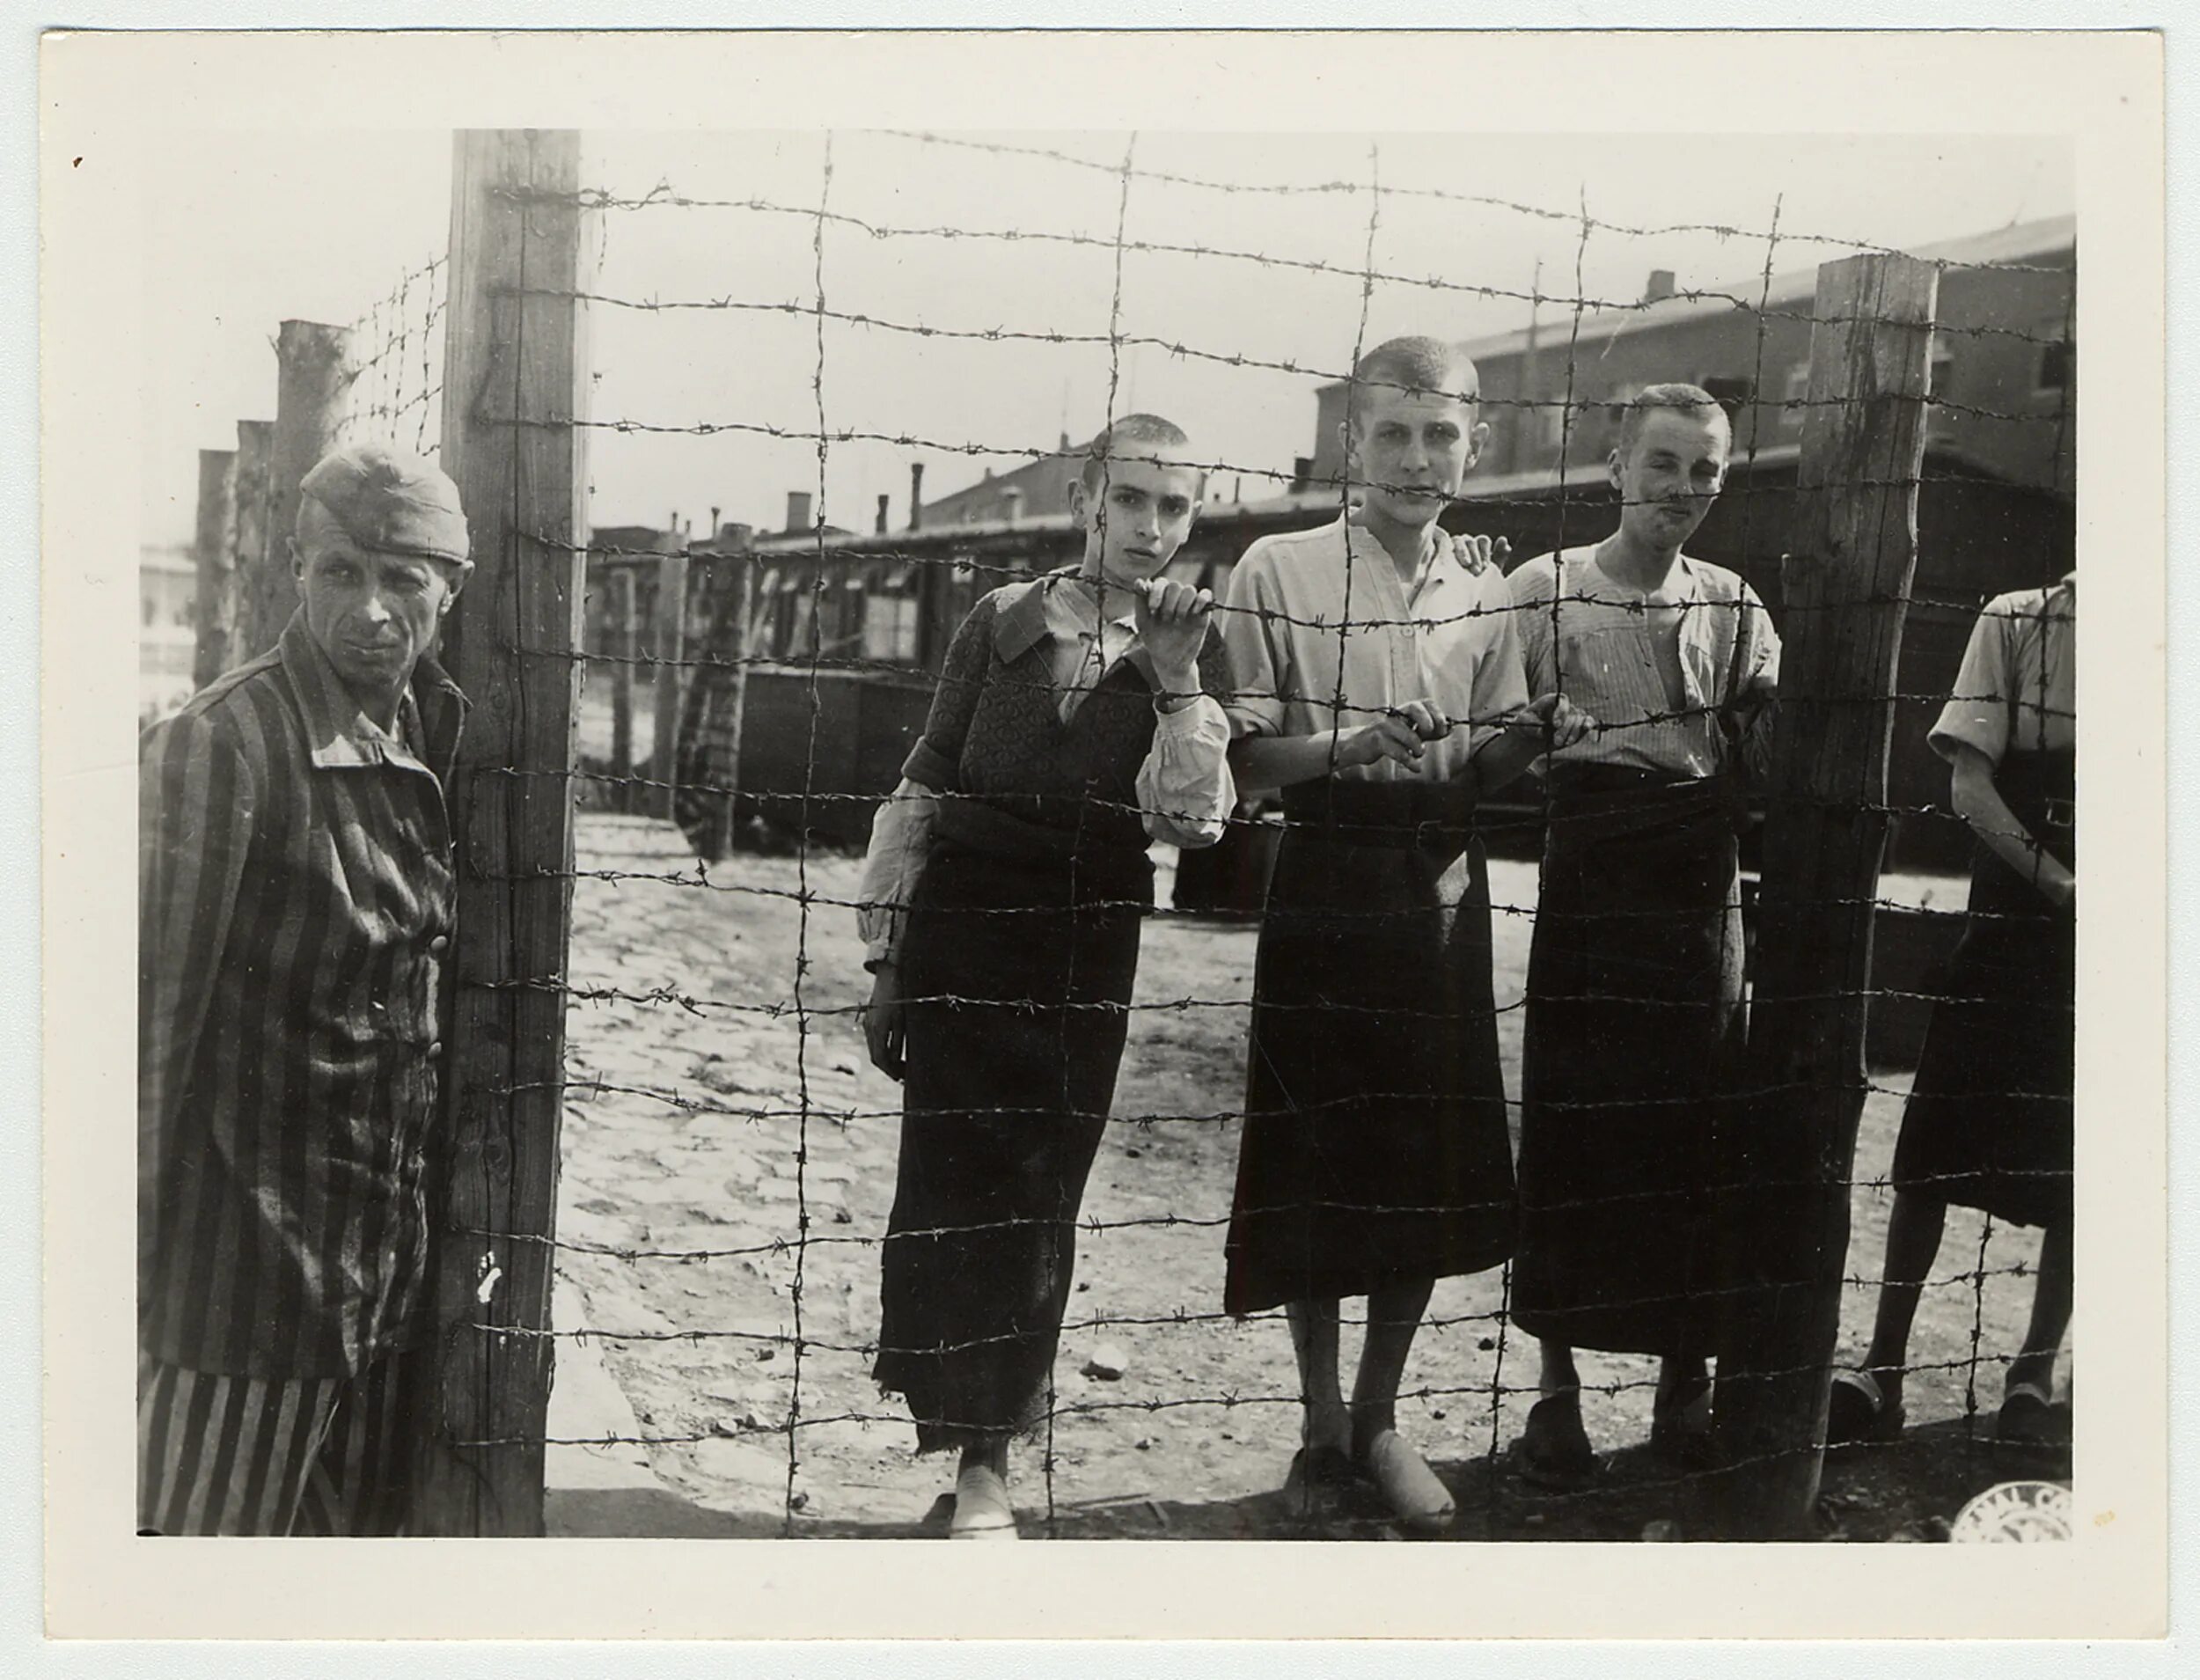 Узники концлагеря Бухенвальд. Бухенвальд  Майданек  Дахау Освенцим (Аушвиц-Биркенау) Саласпилс. Концентрационный лагерь Аушвиц дети.